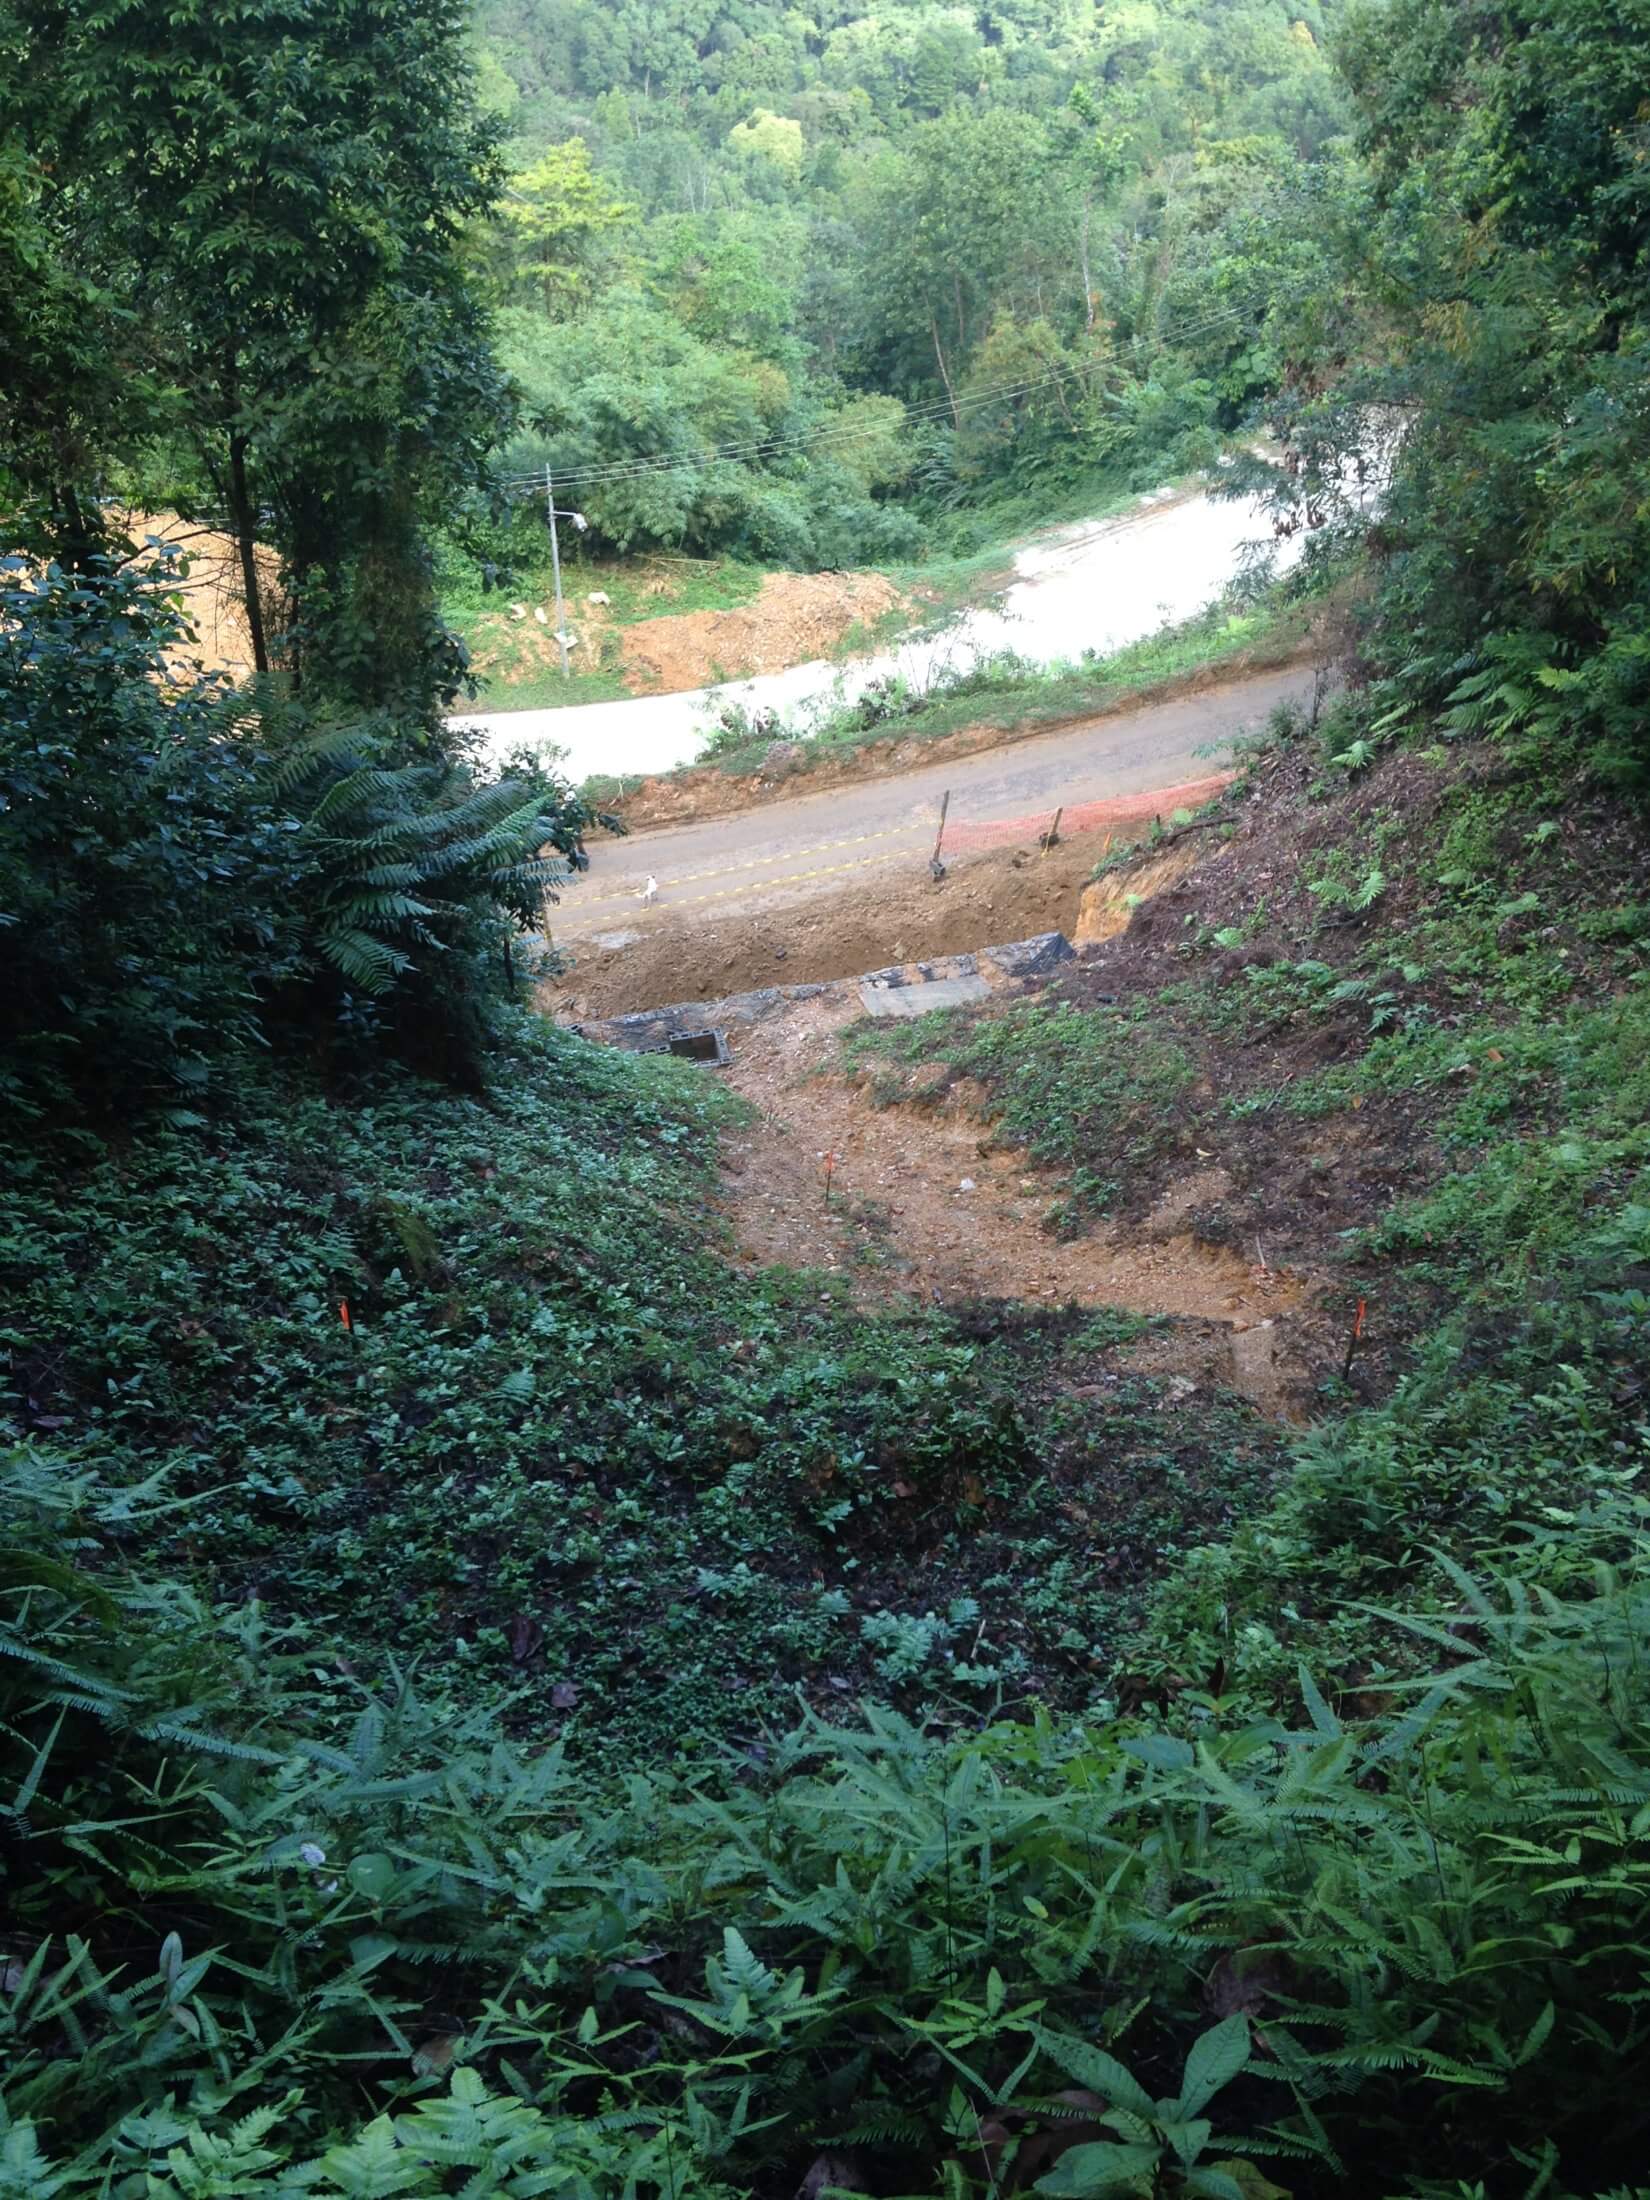 Arima Blanchisseuse Road Landslide 2